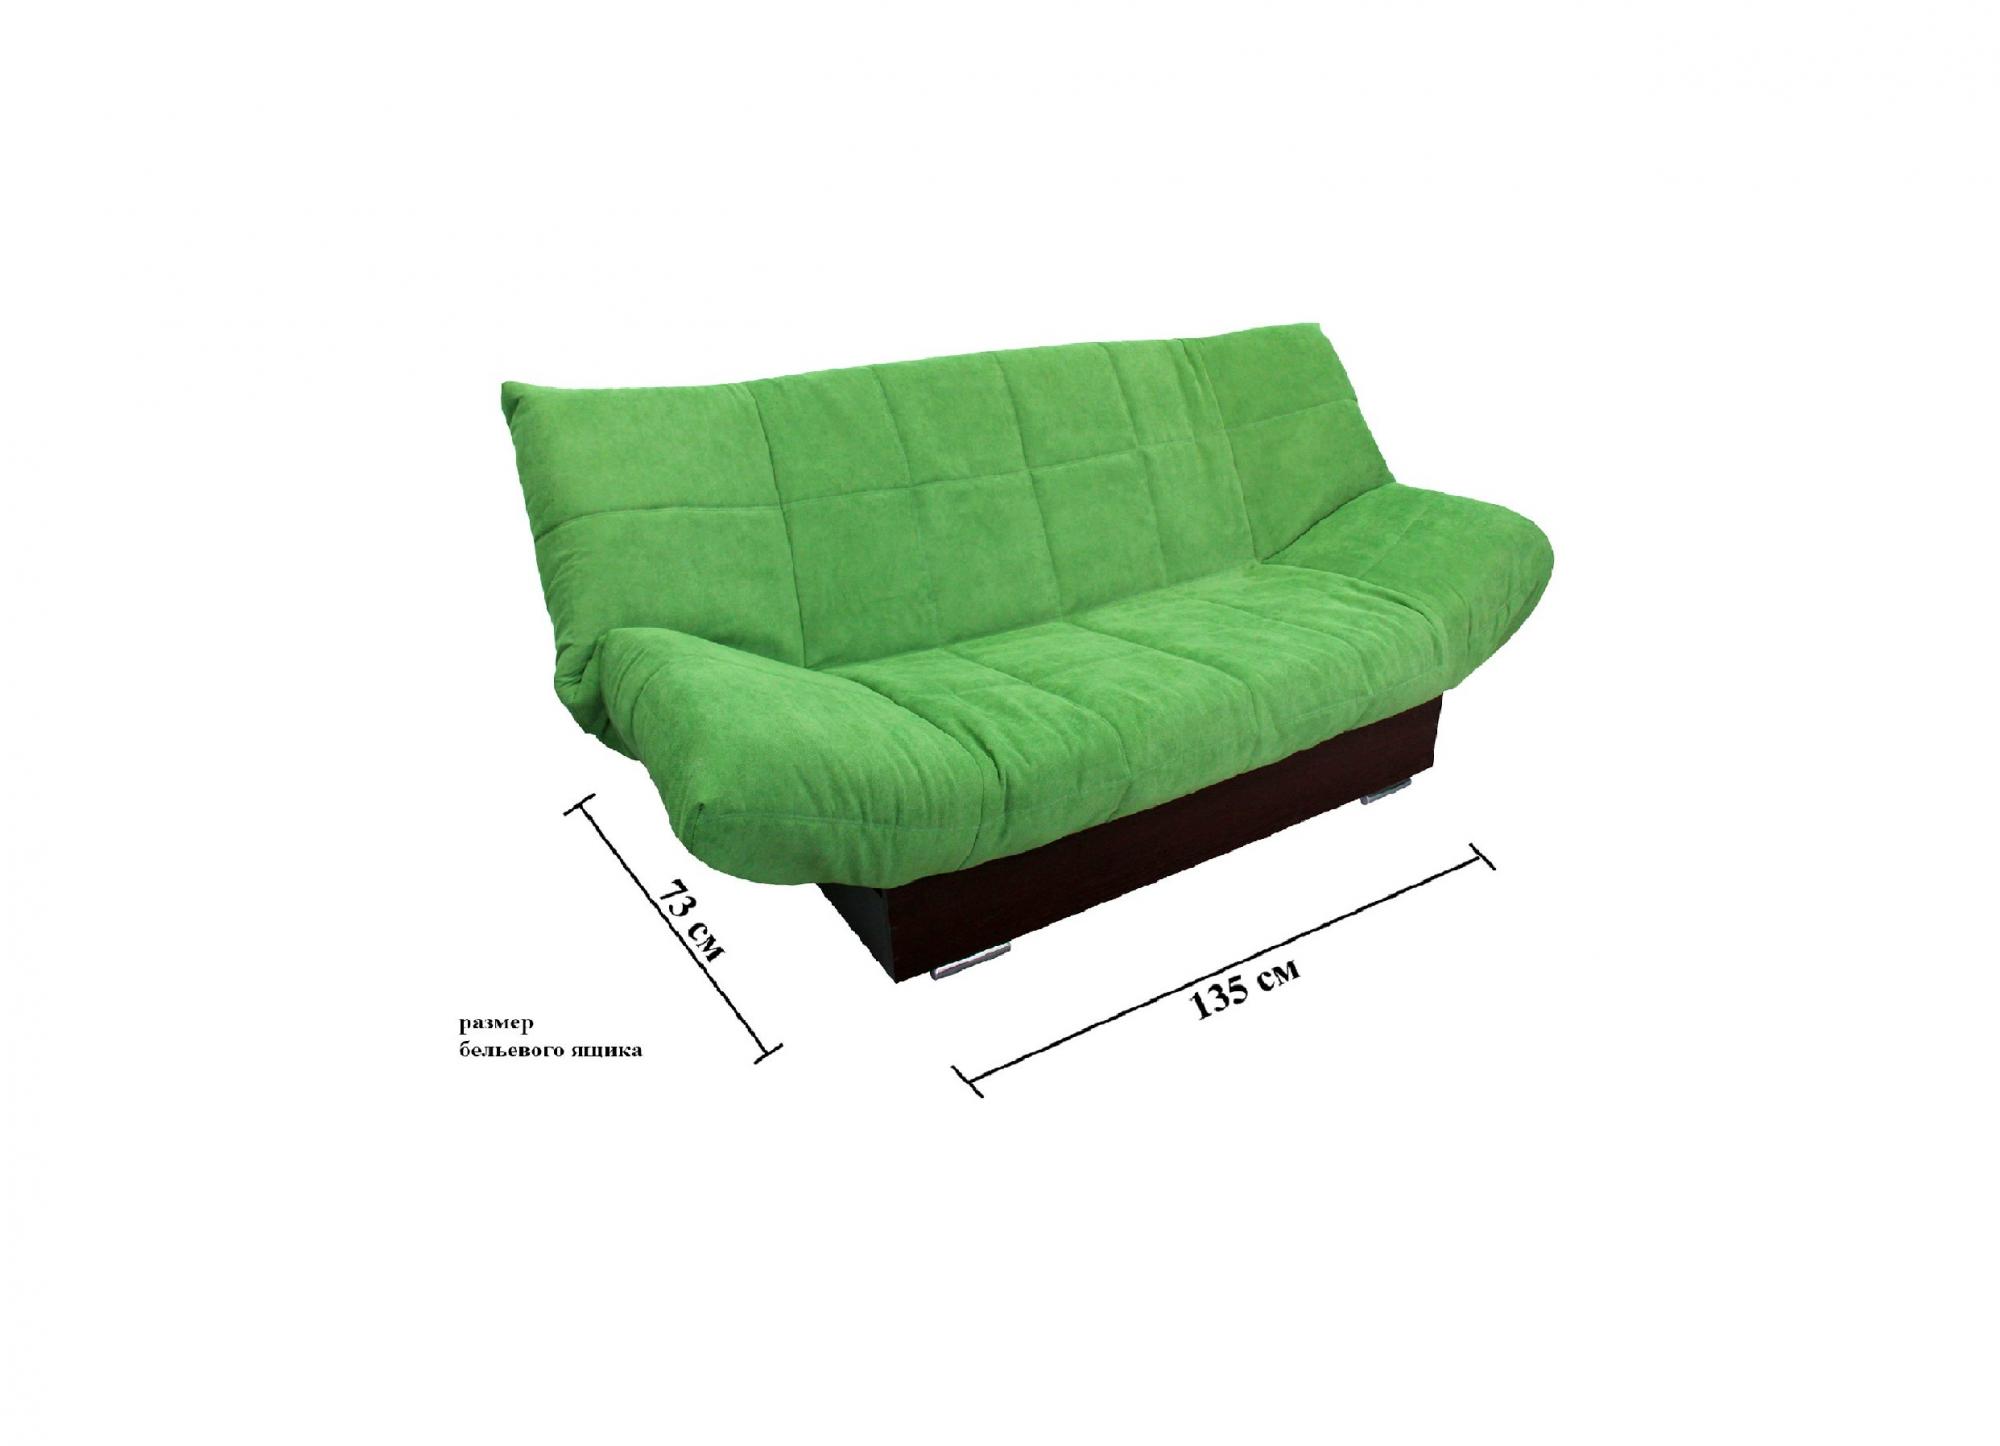 размеры клик кляк дивана в разложенном